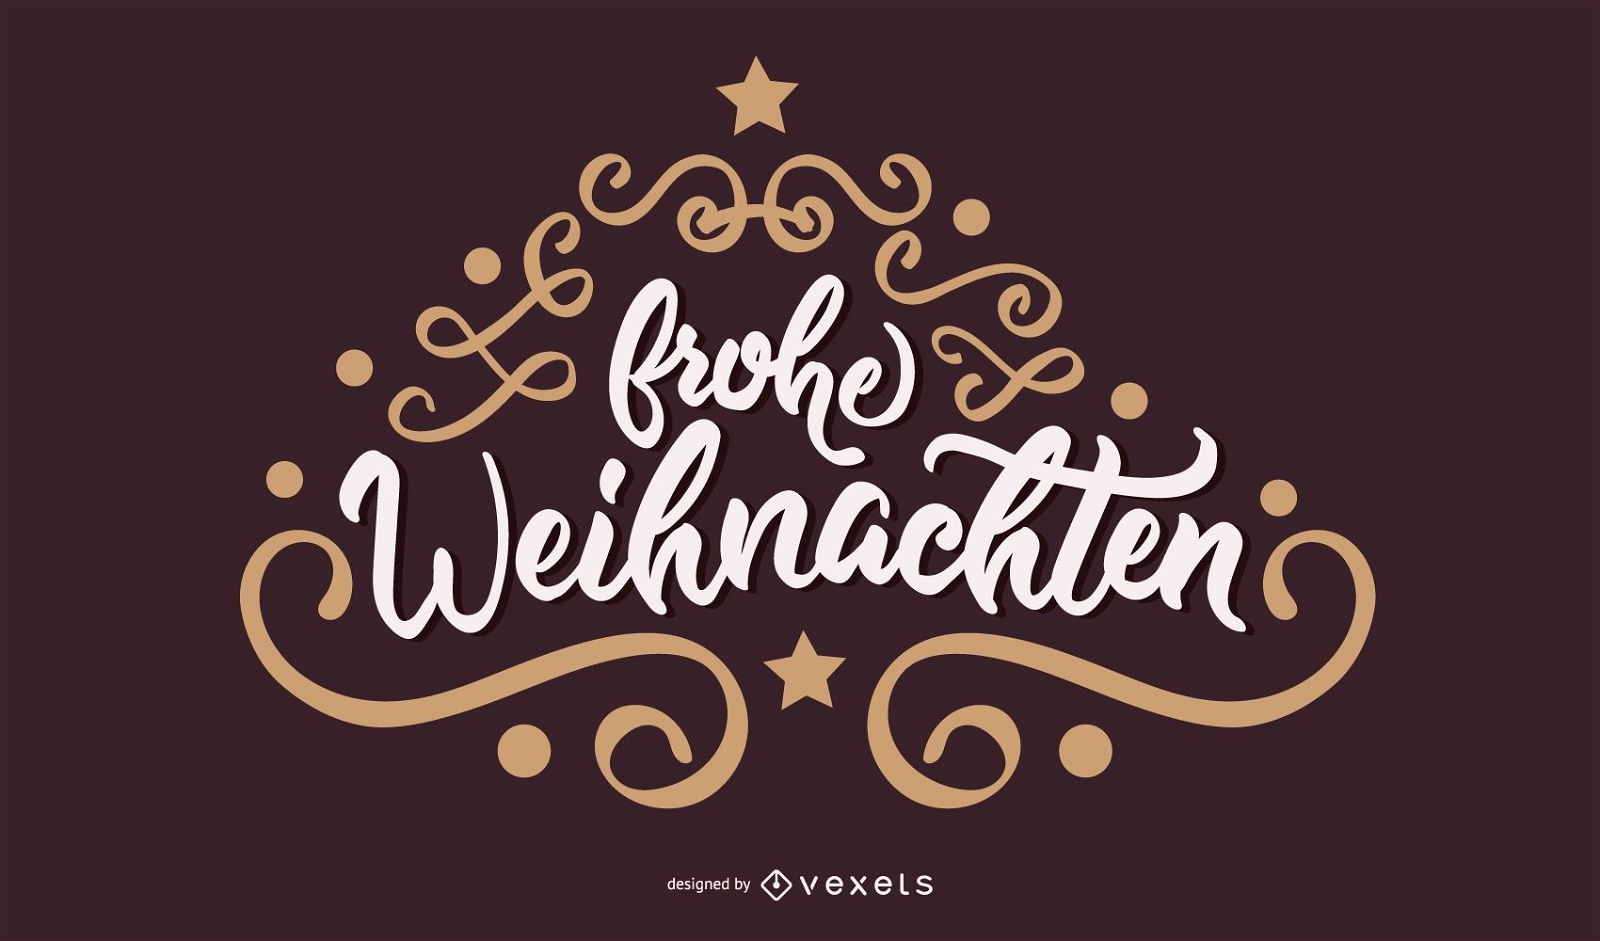 Frohe Weihnachten German Christmas Banner